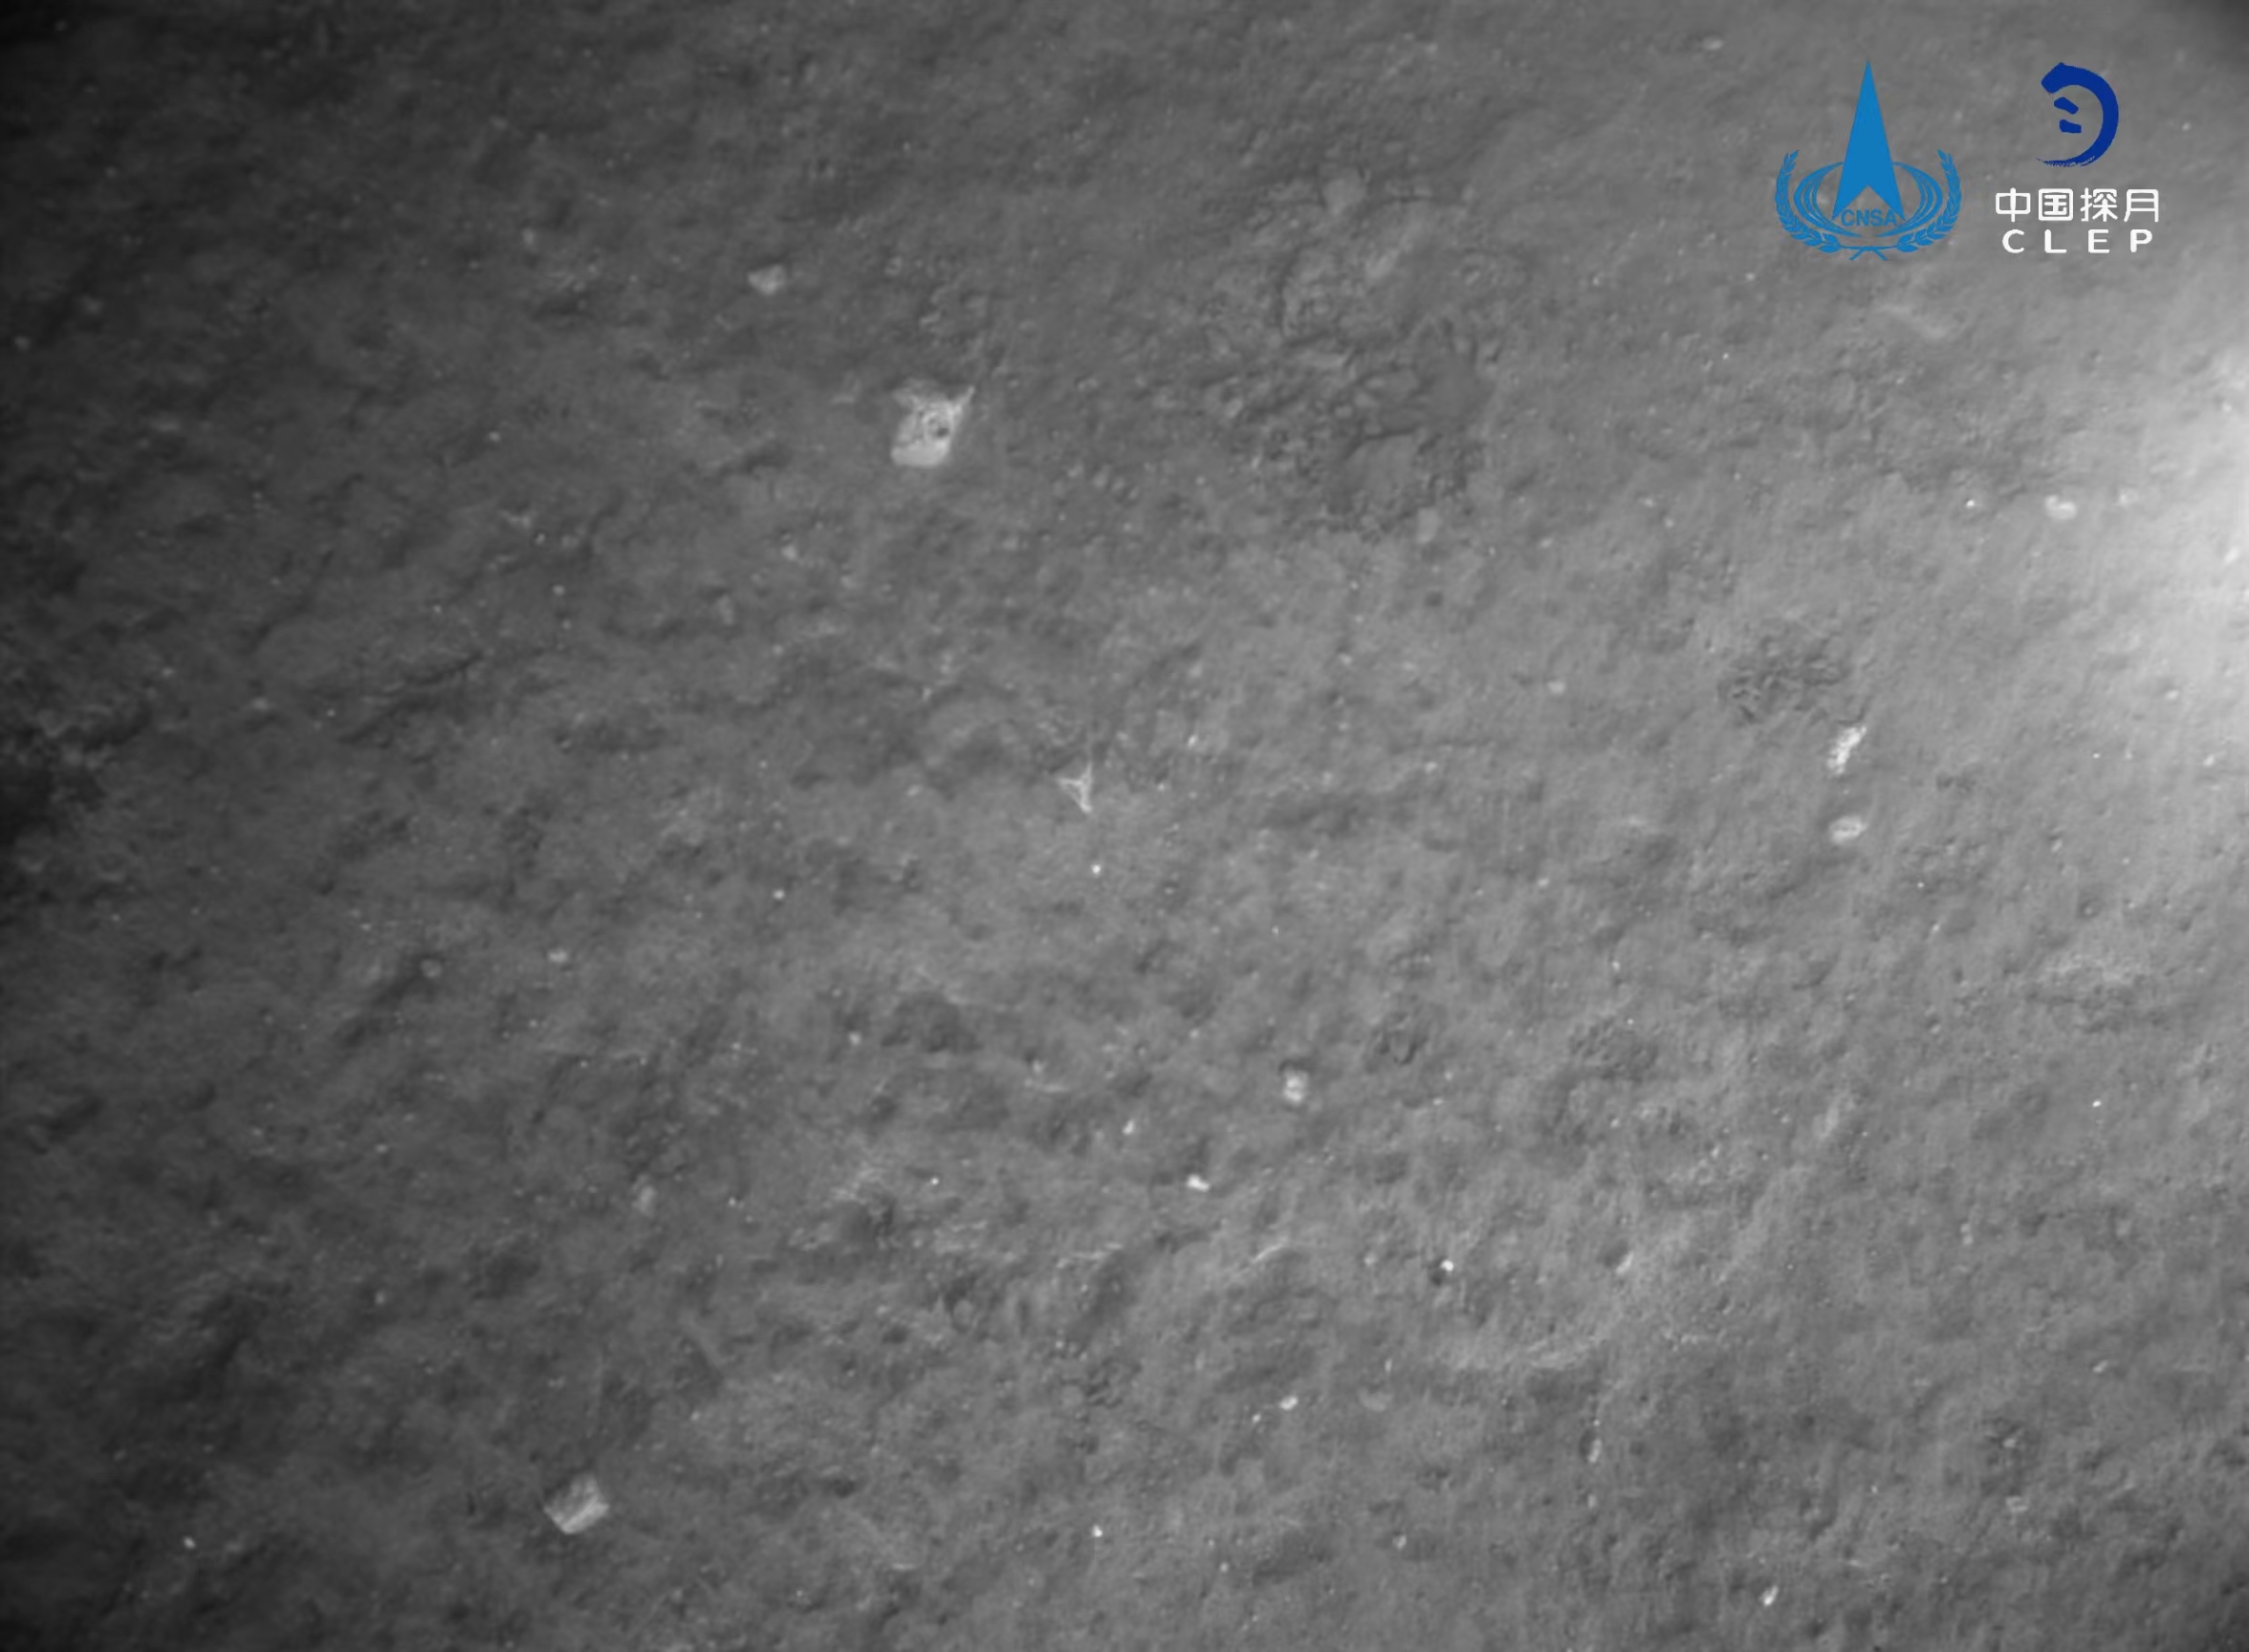 该图由降落相机在着陆器安全着陆后拍摄，全景相机拍摄的着陆点影像
。图像显示拍摄月背区域中下部和右部分布有多个十多公里直径的环形坑，图像的下方是着陆腿和着陆时冲击挤压隆起的月壤	。图像的下方是着陆腿和着陆时冲击挤压隆起的月壤	�。包括落月过程中降落相机拍摄的着陆区域附近影像	、图像上方是着陆点北部查菲环形山，图像显示着陆器底部相对平坦
，